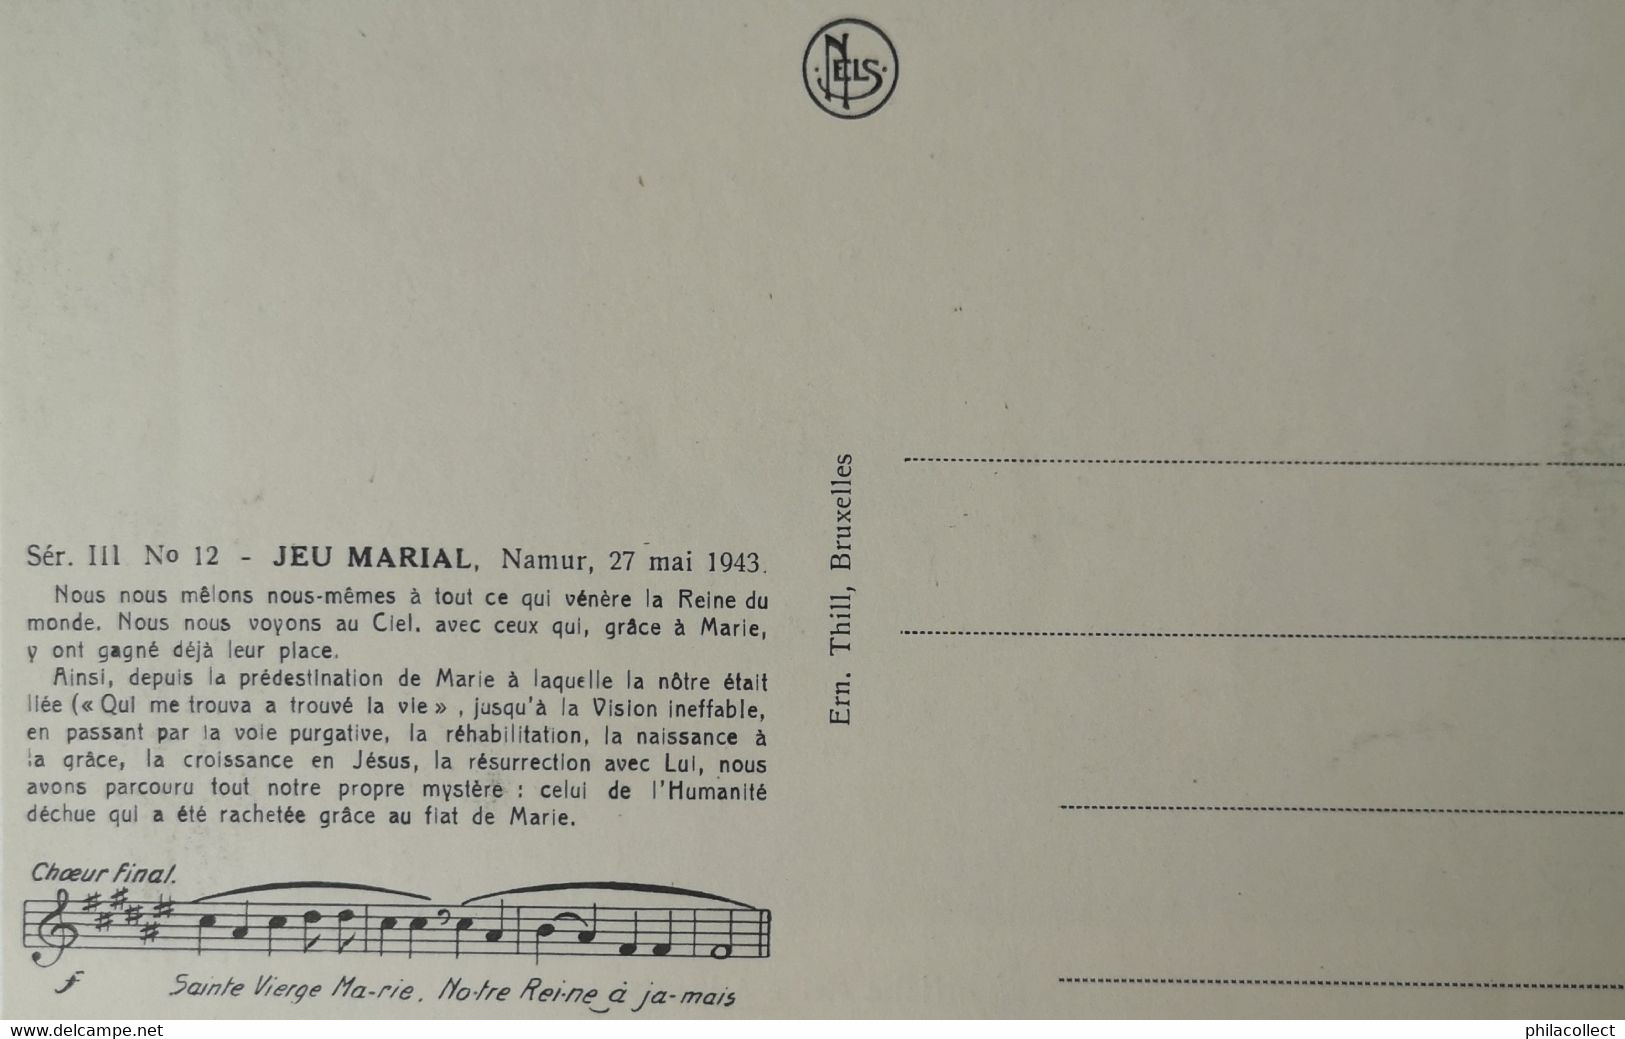 Namur // Jeu Marial Namur 27 Mai 1943 // Ser. III No. 12 // 19?? - Namur